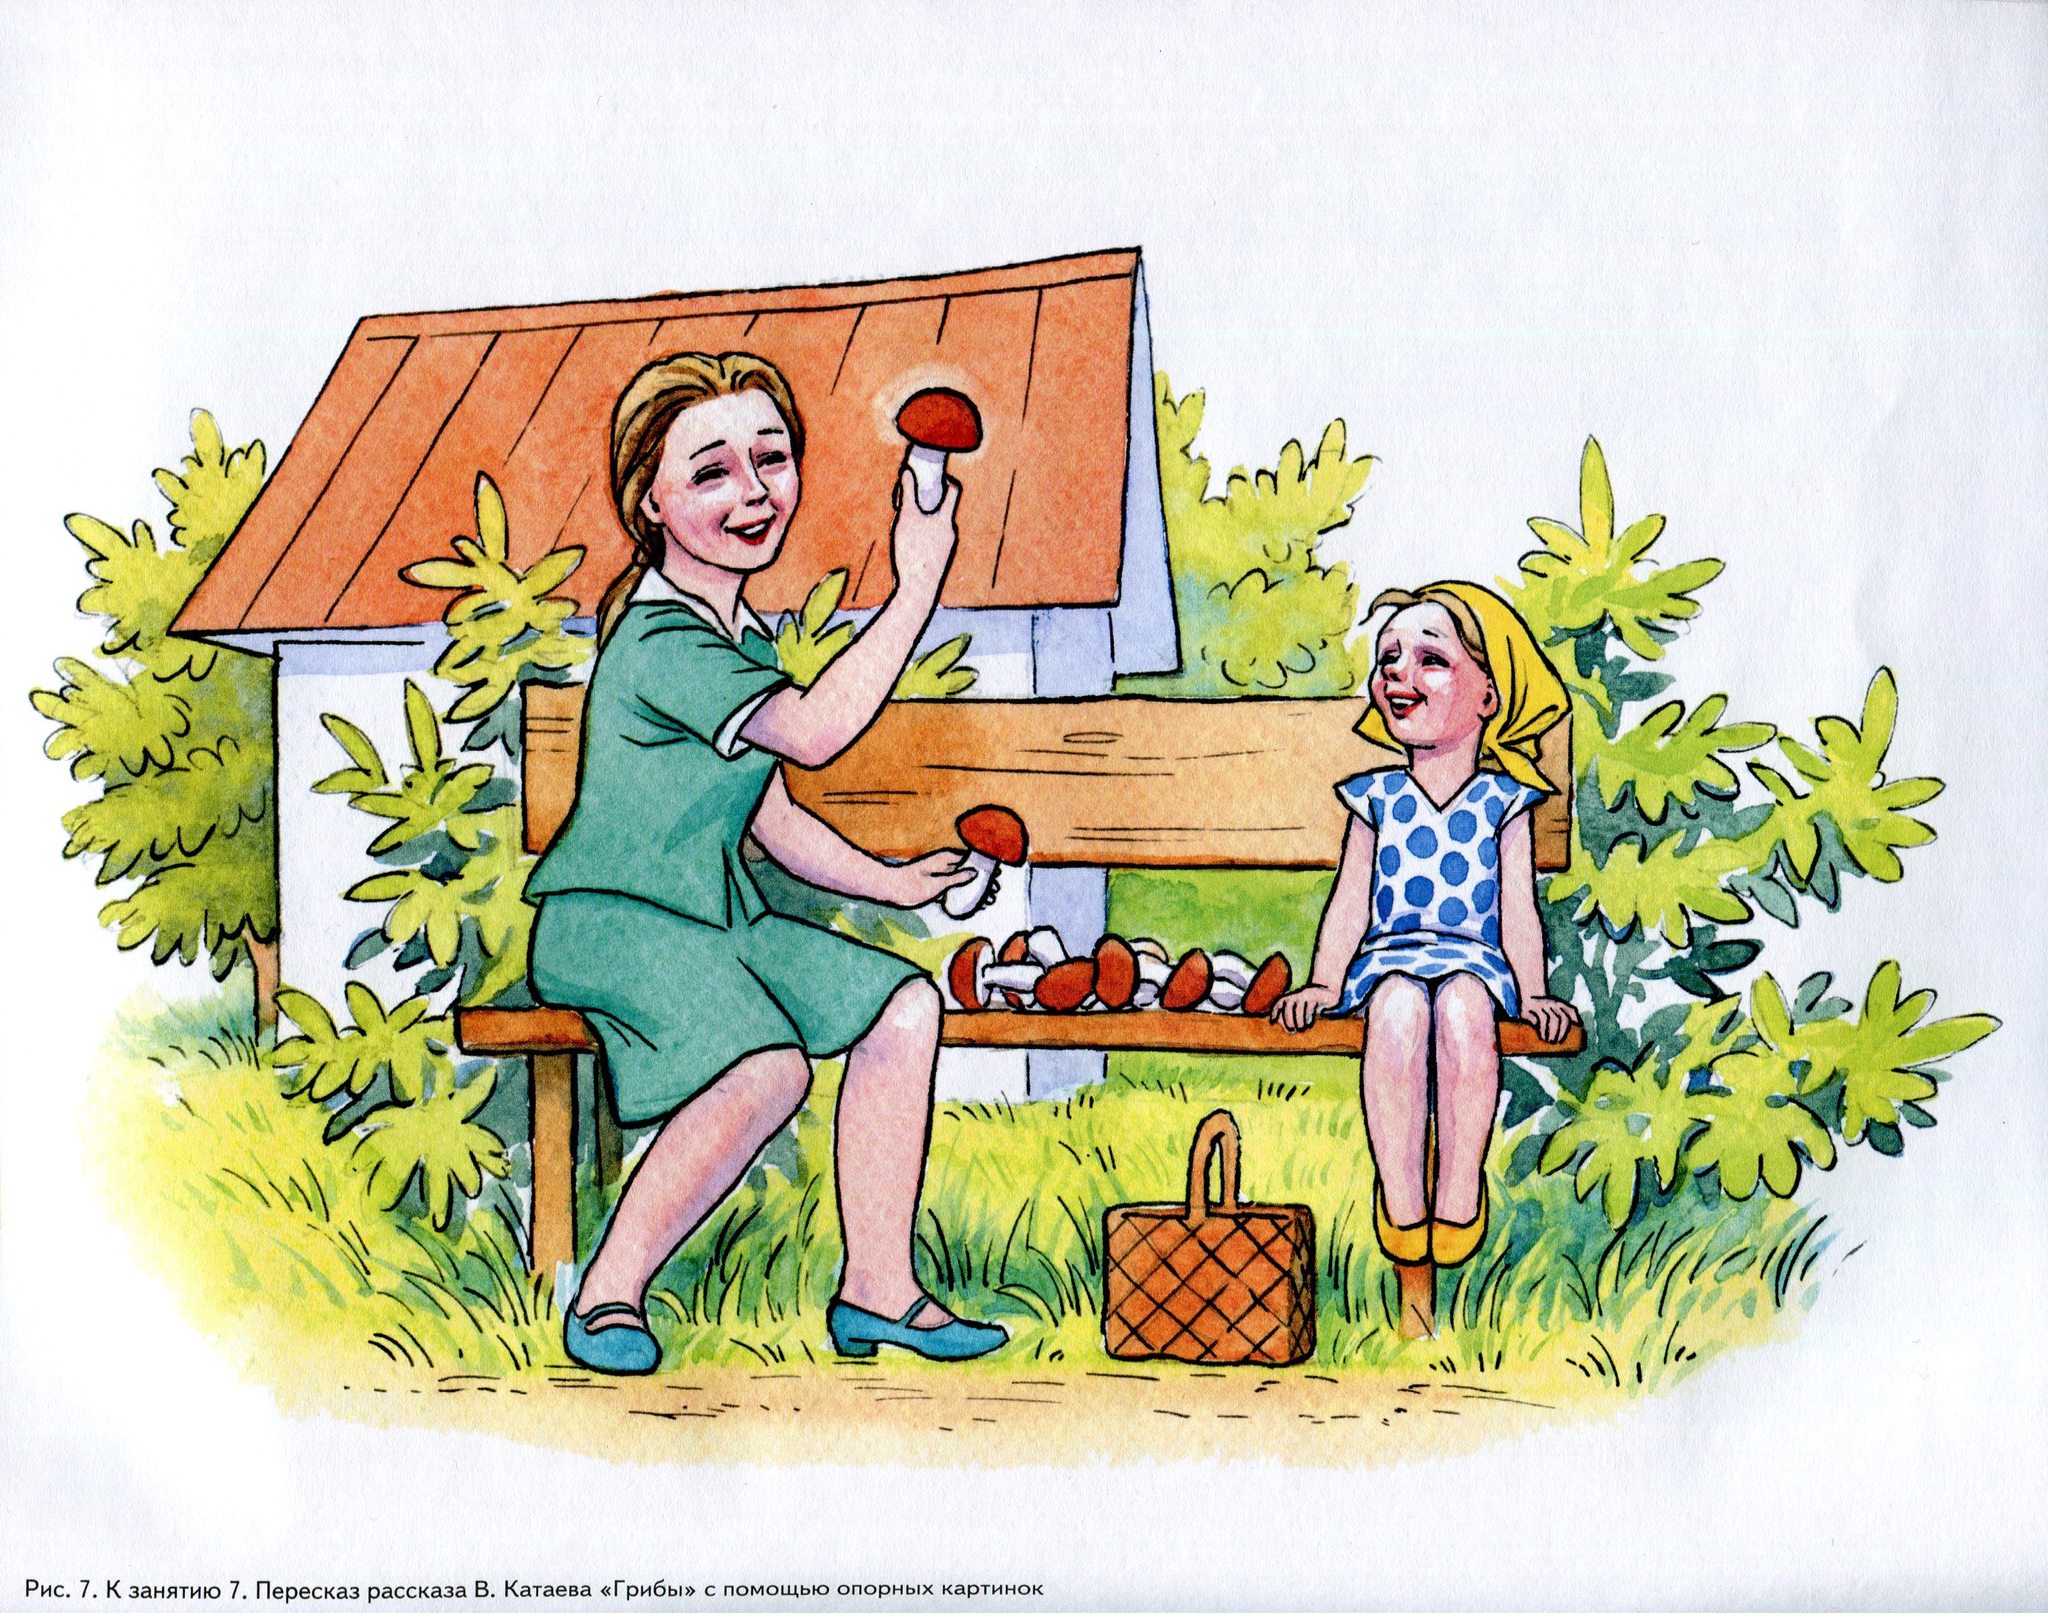 Изображение по картинке. Катаев грибы. Иллюстрации к рассказу Катаева грибы. Катаев грибы иллюстрации. Сюжетные иллюстрации для детей.